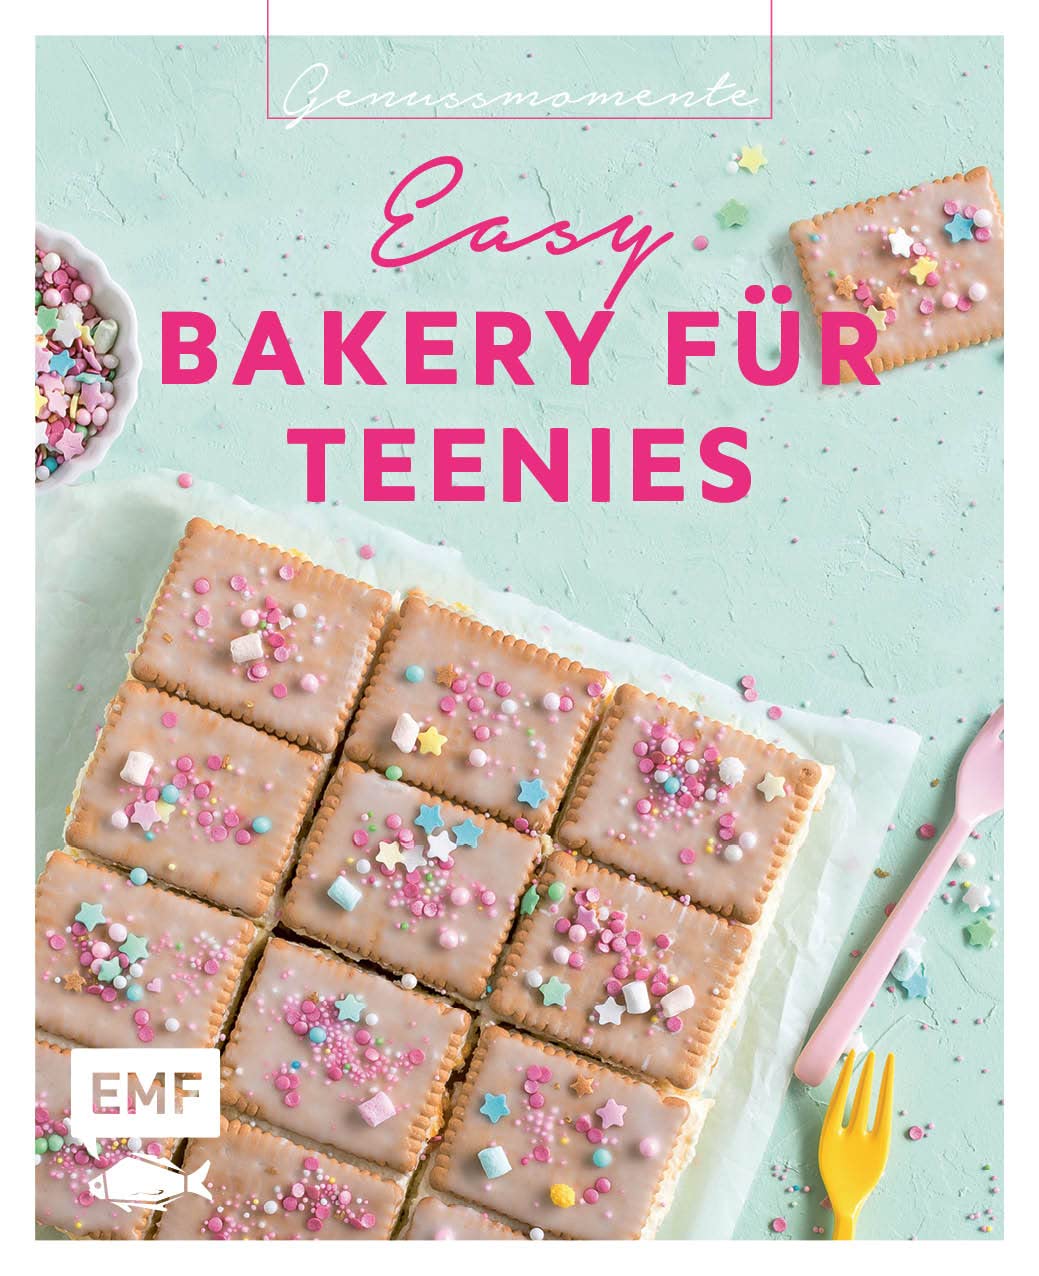 Genussmomente: Easy Bakery for Teenagers